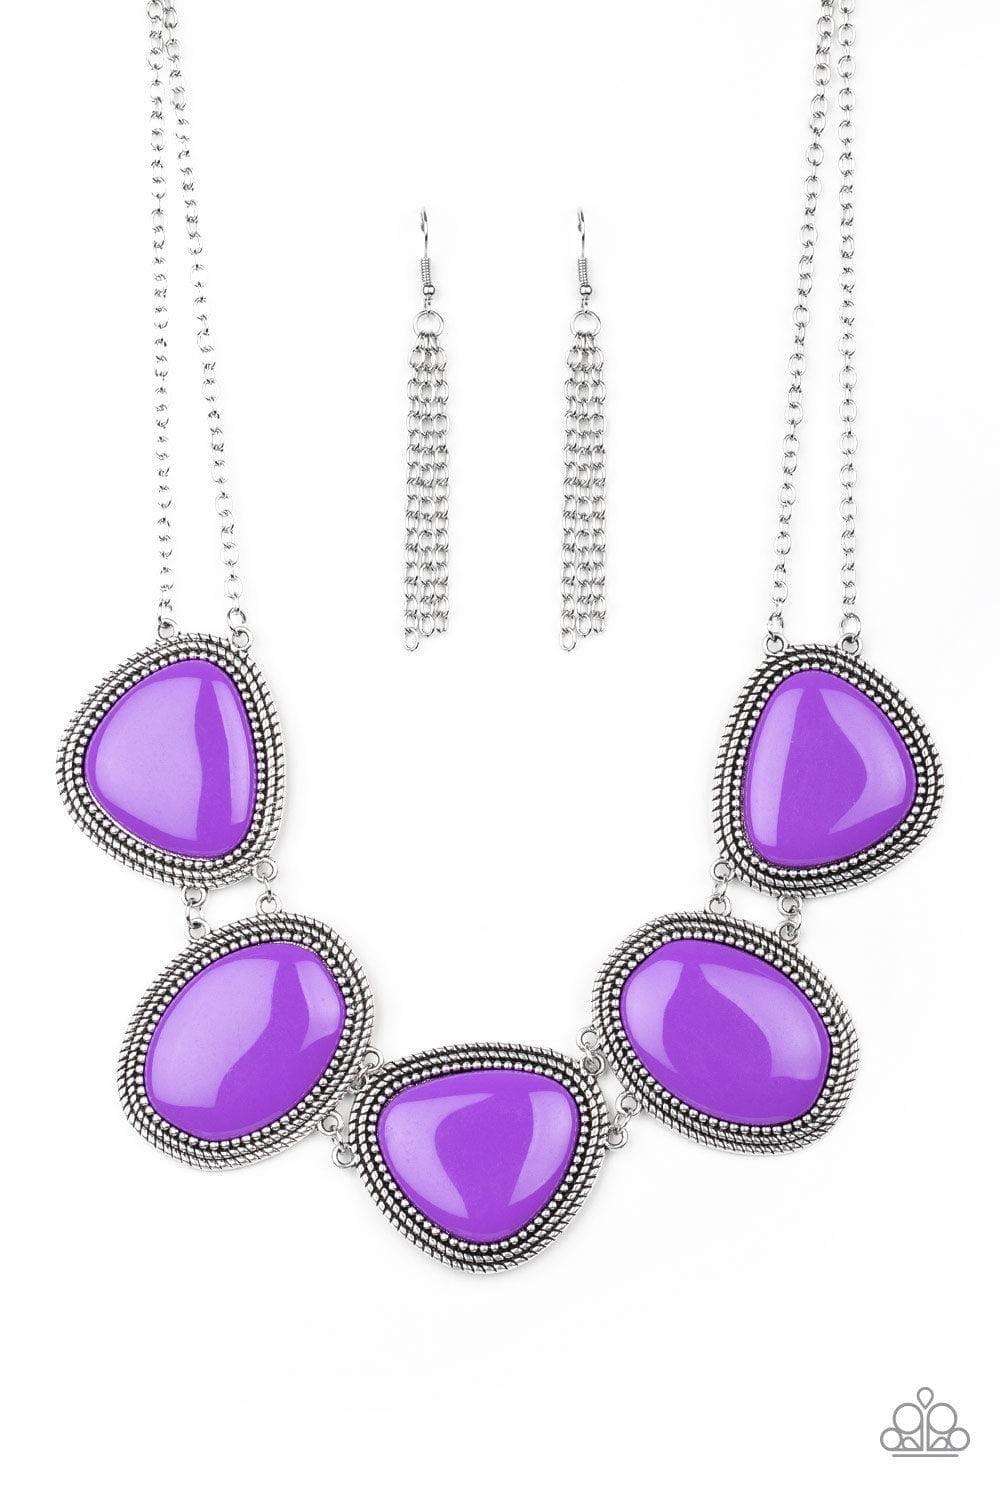 Paparazzi Accessories - Viva La Vivid - Purple Necklace - Bling by JessieK